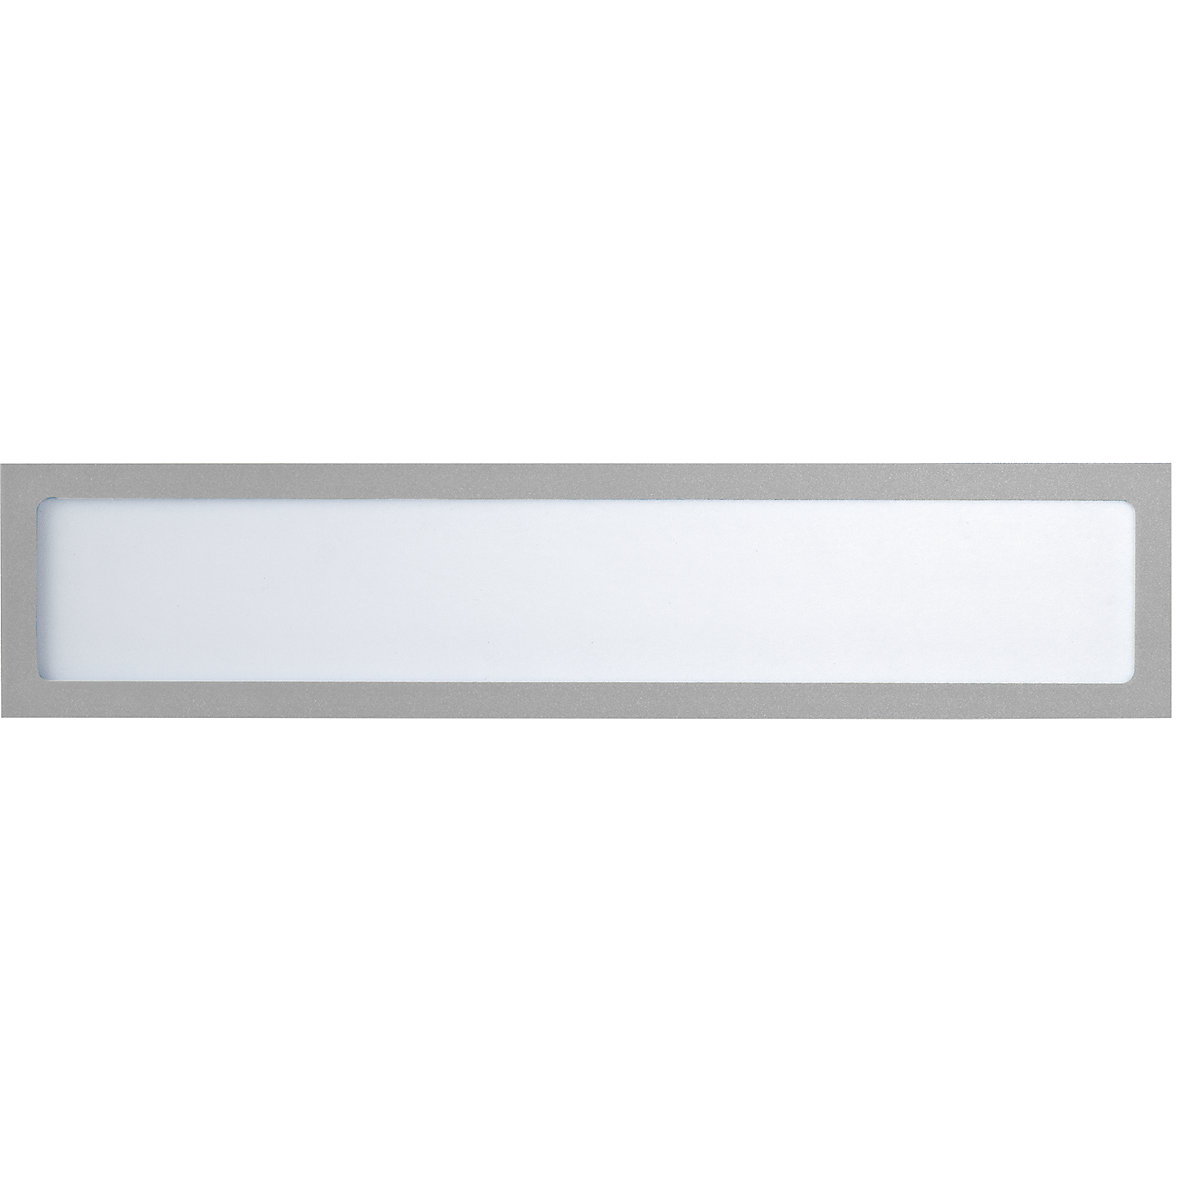 Busta portastampati magnetica – eurokraft basic, per elementi di testo, UNI A4 in orizzontale / UNI A5 in verticale, 312 x 60 mm, telaio argento, conf. 10 pz.-6